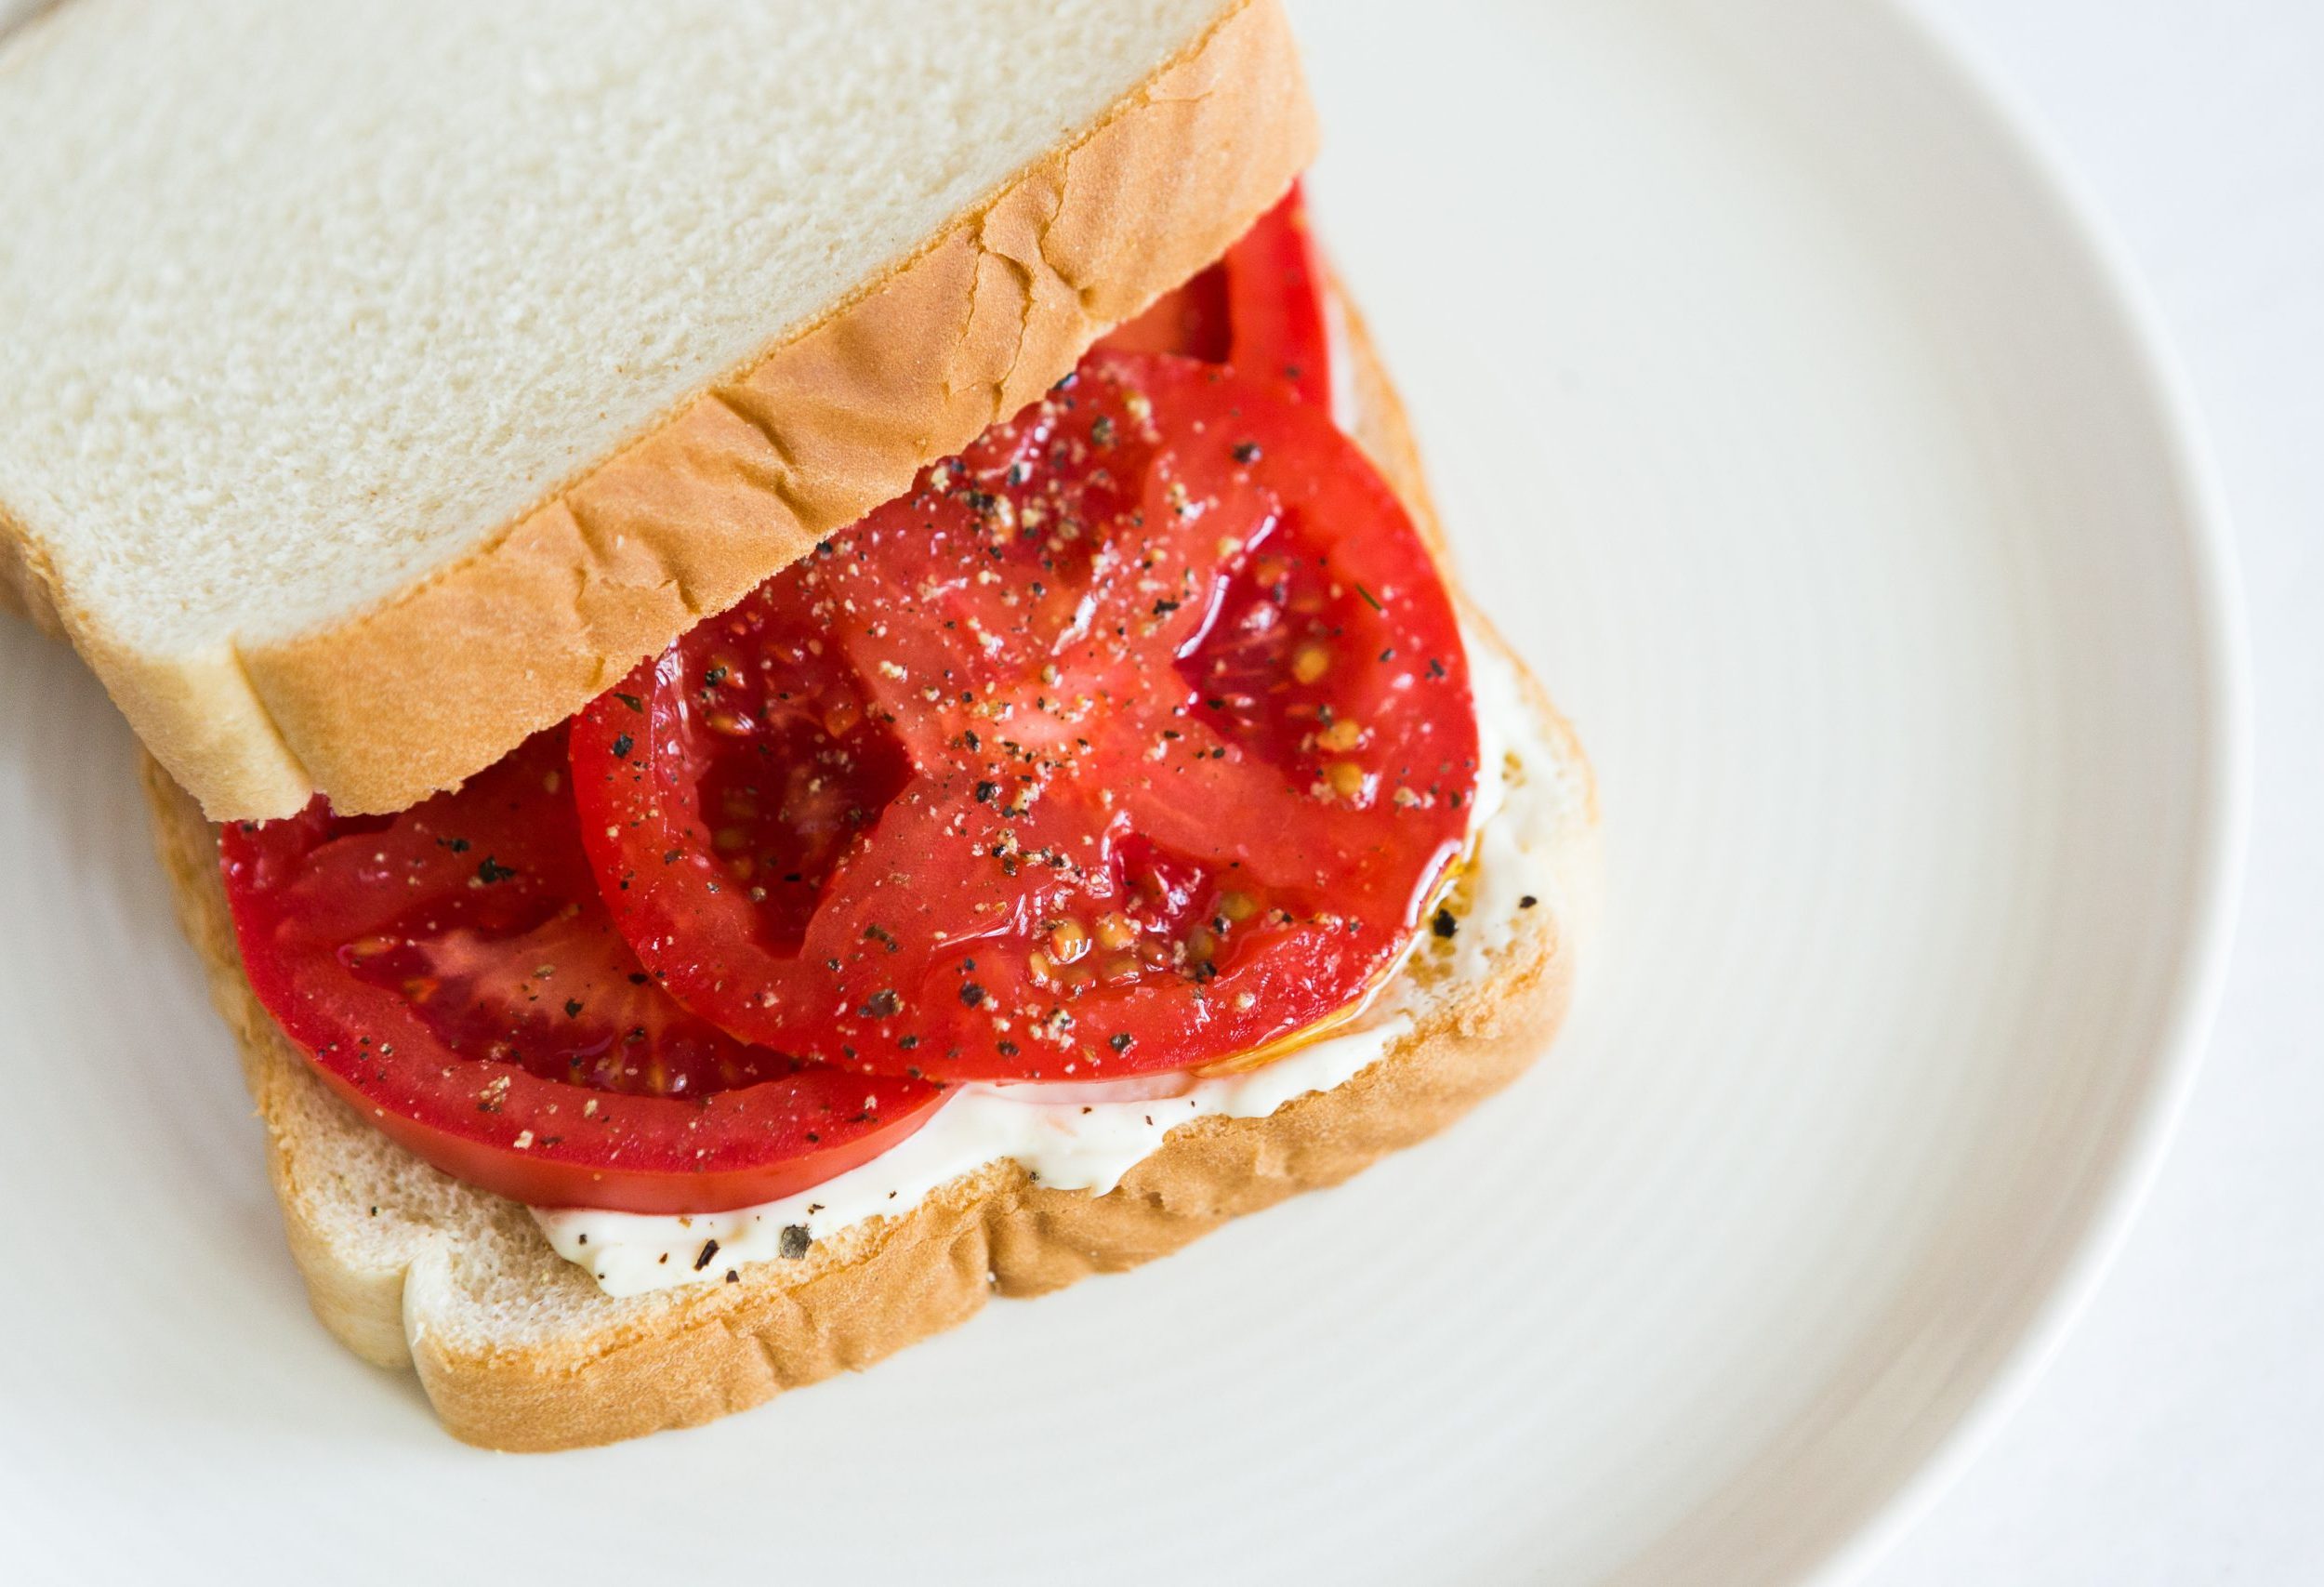 tomato sandwich mississippi